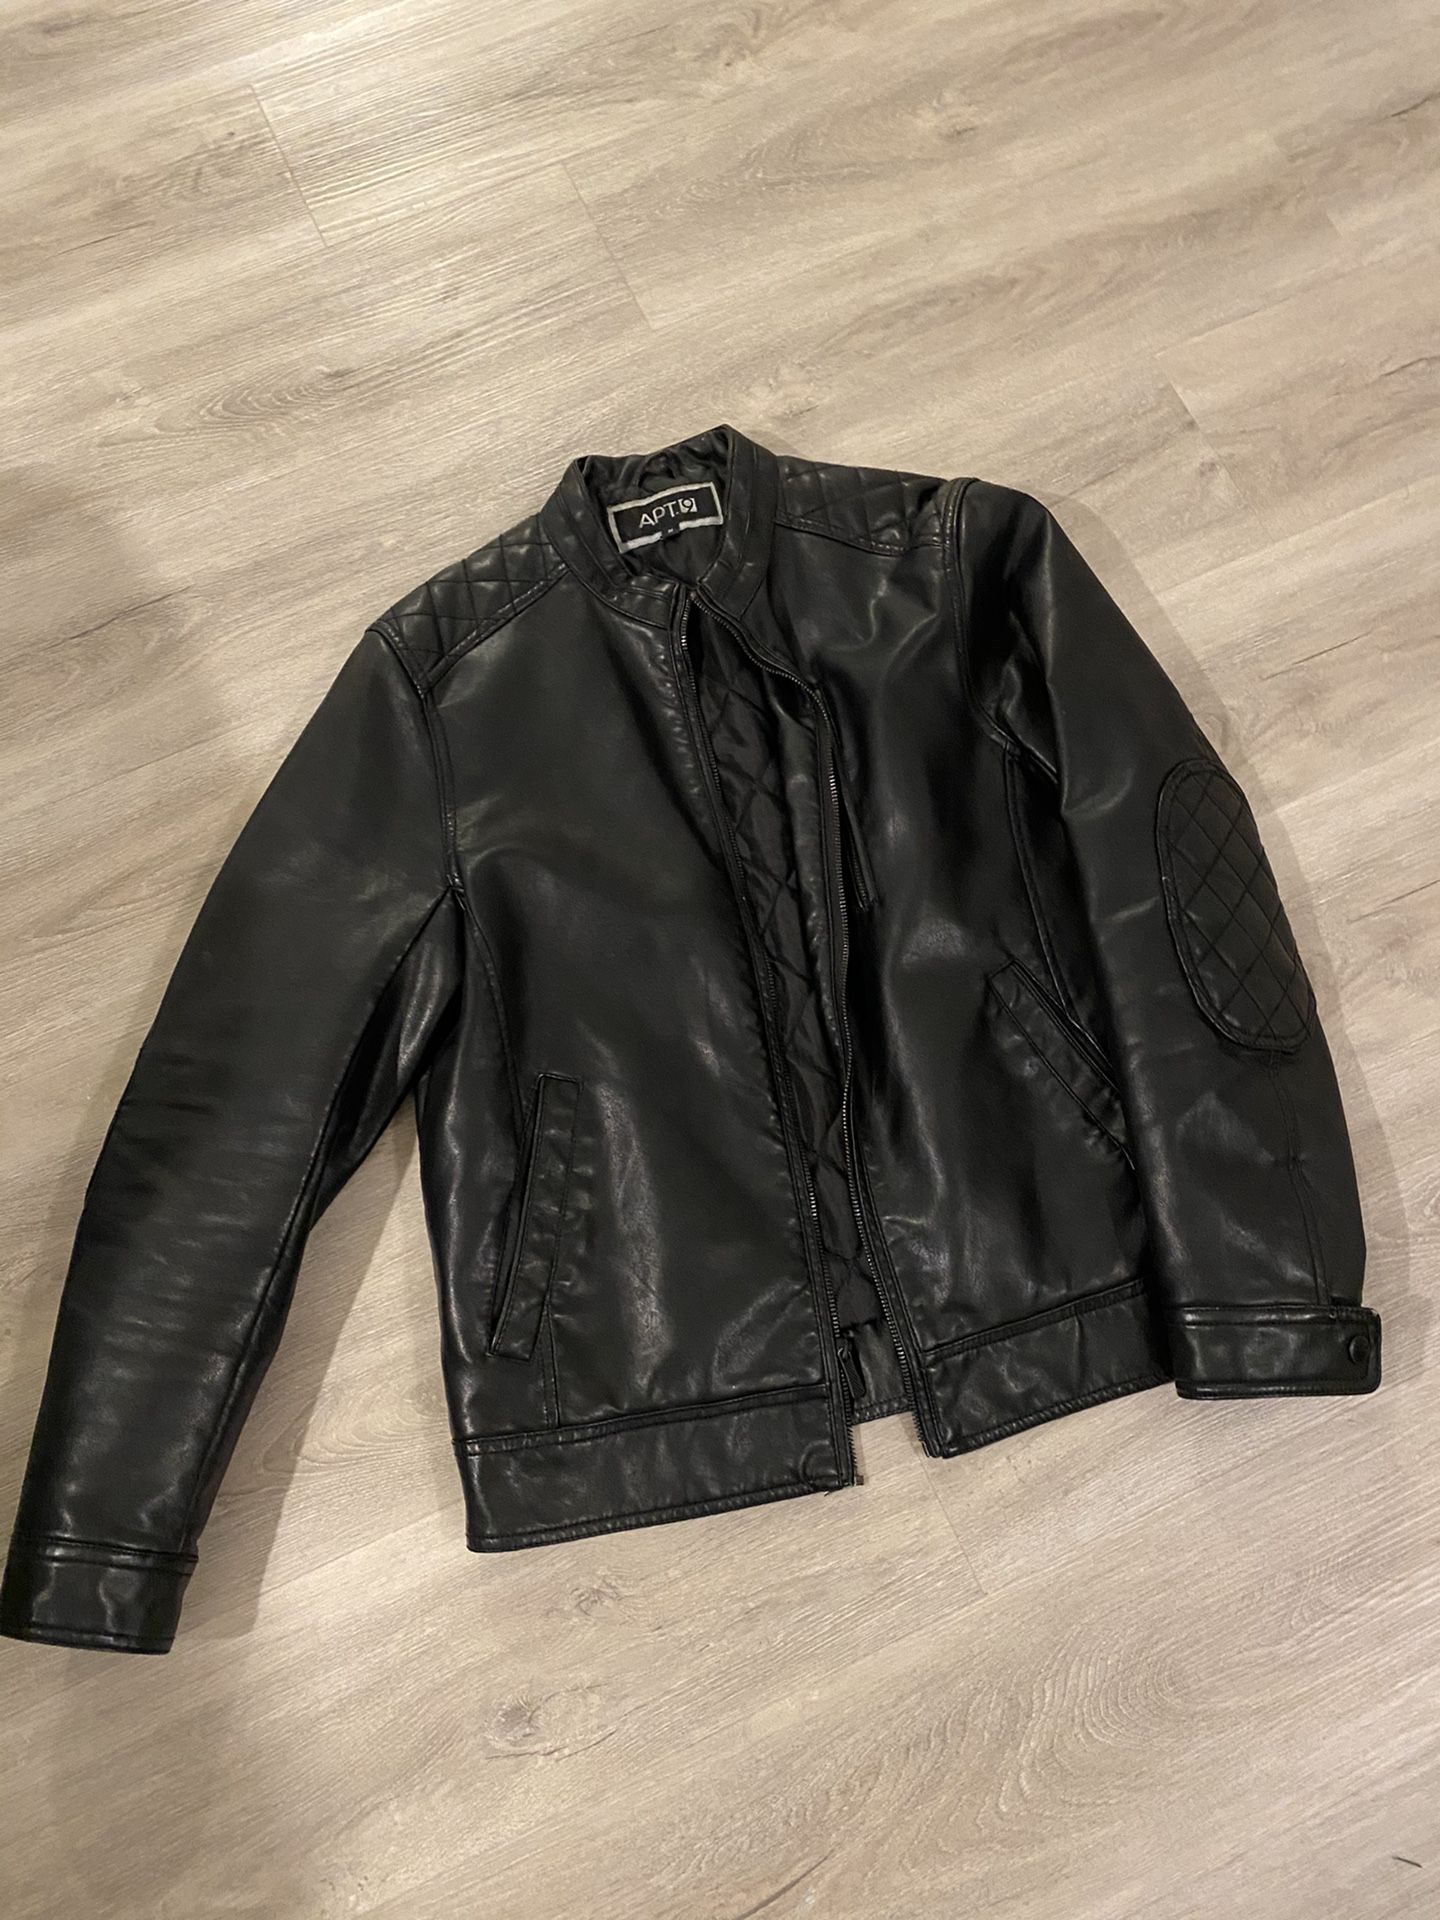 Apt 9 black leather jacket